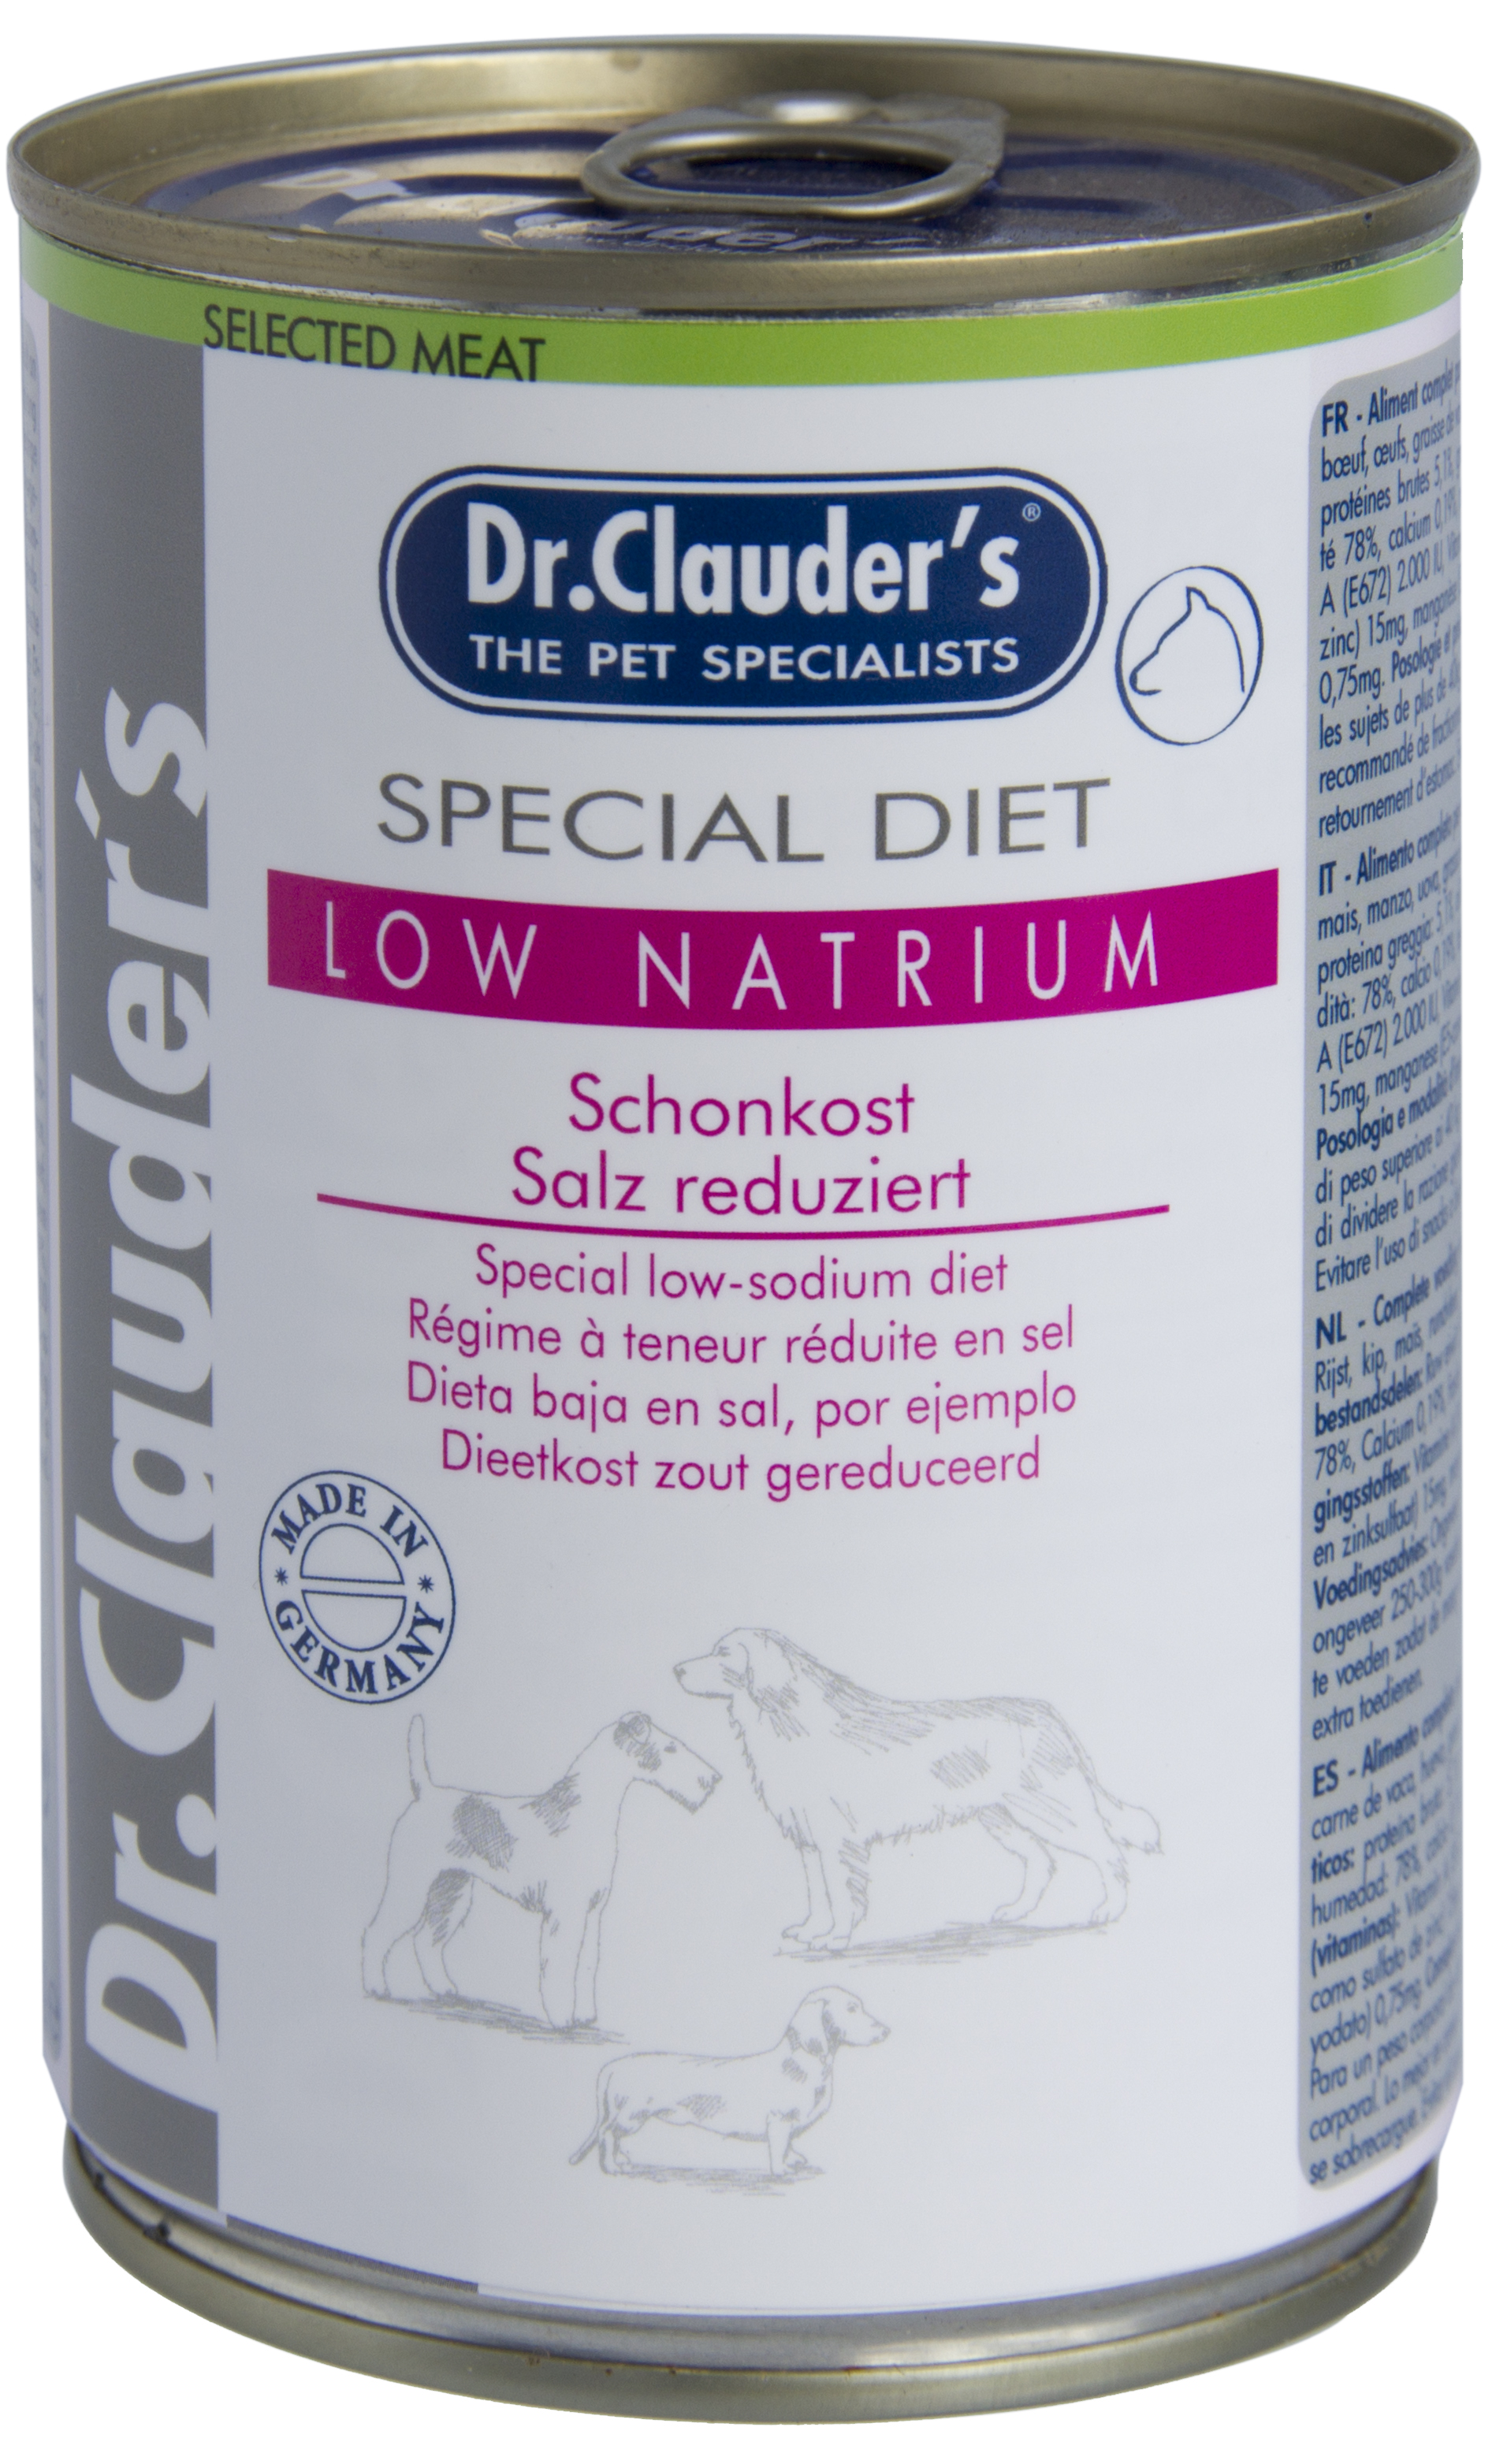 Dr.Clauder's Special Diet Low Natrium